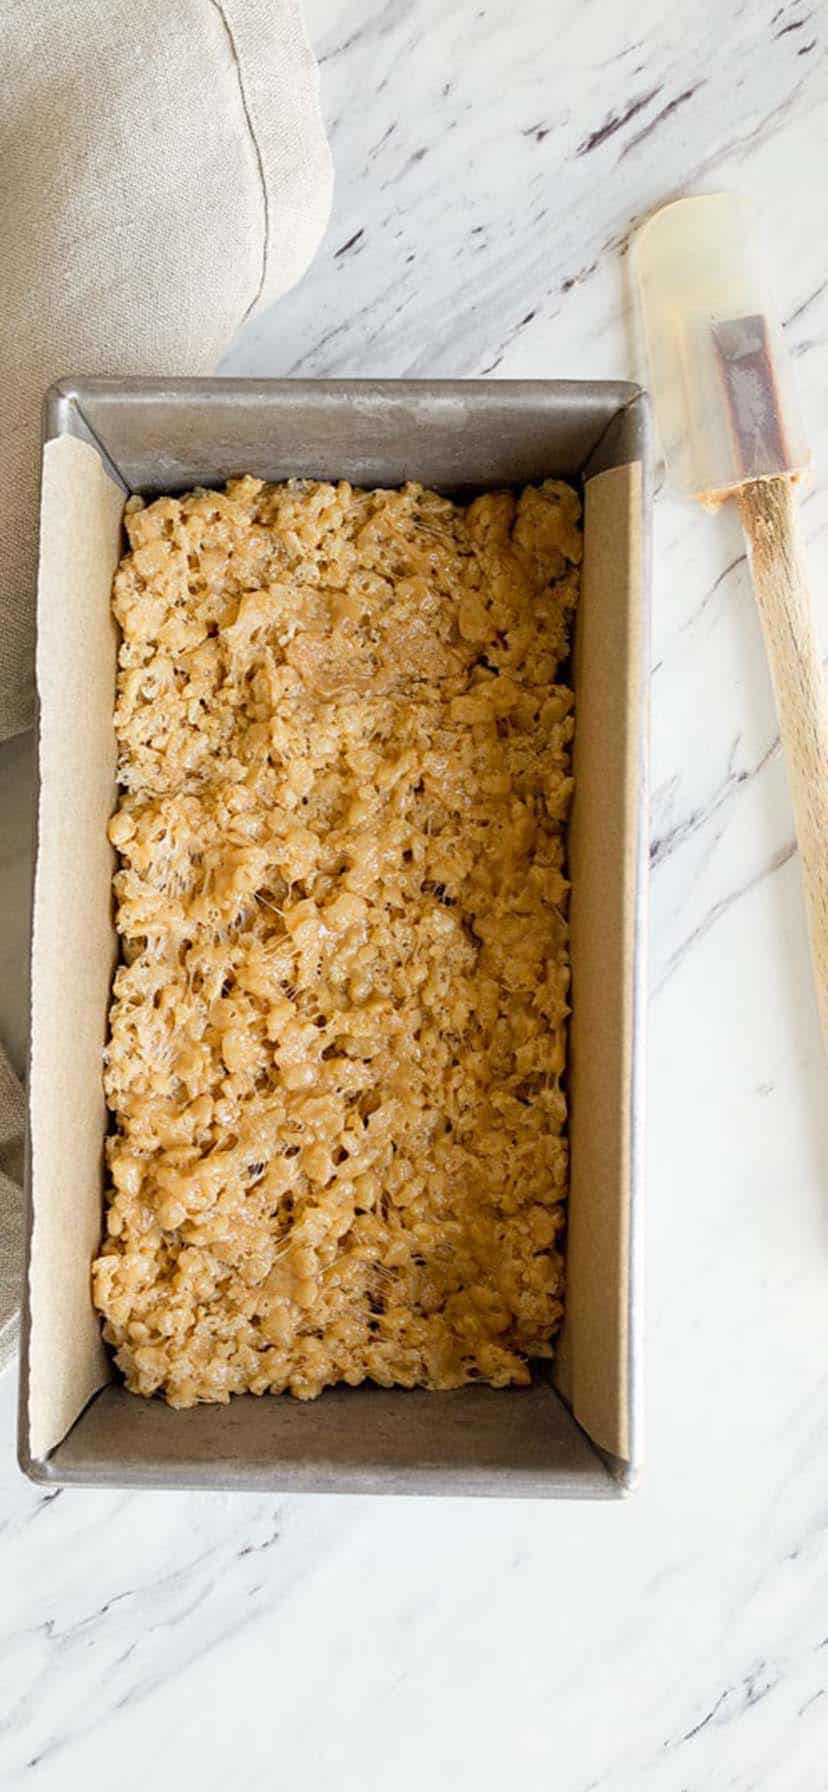 a bread load pan of peanut butter Rice Krispie treats